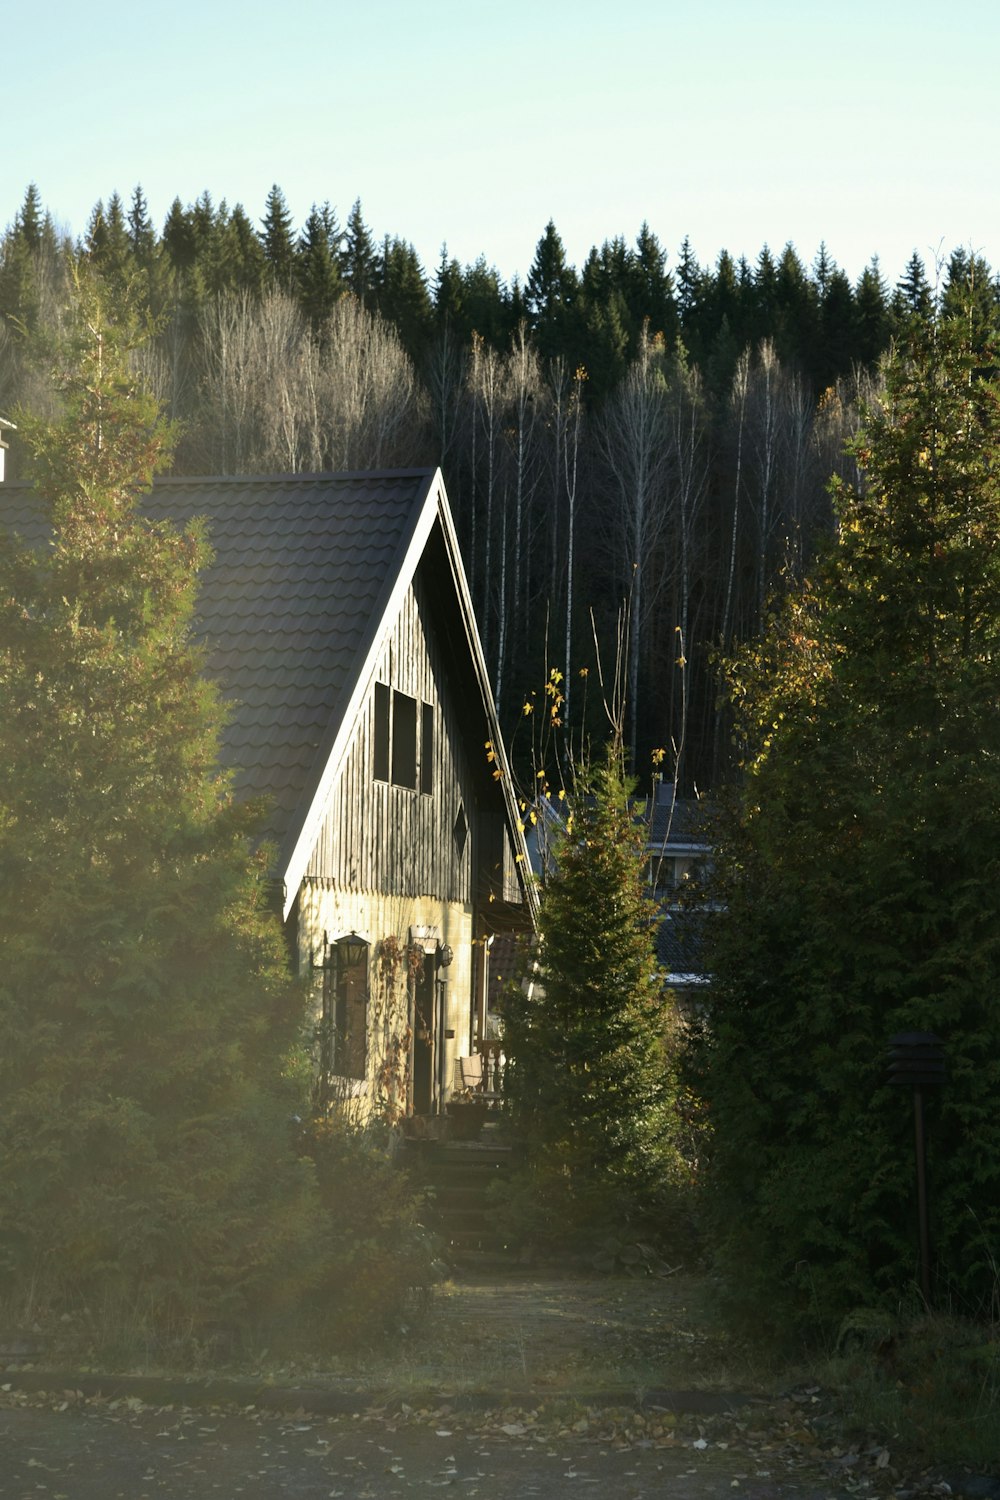 gray wooden house near trees